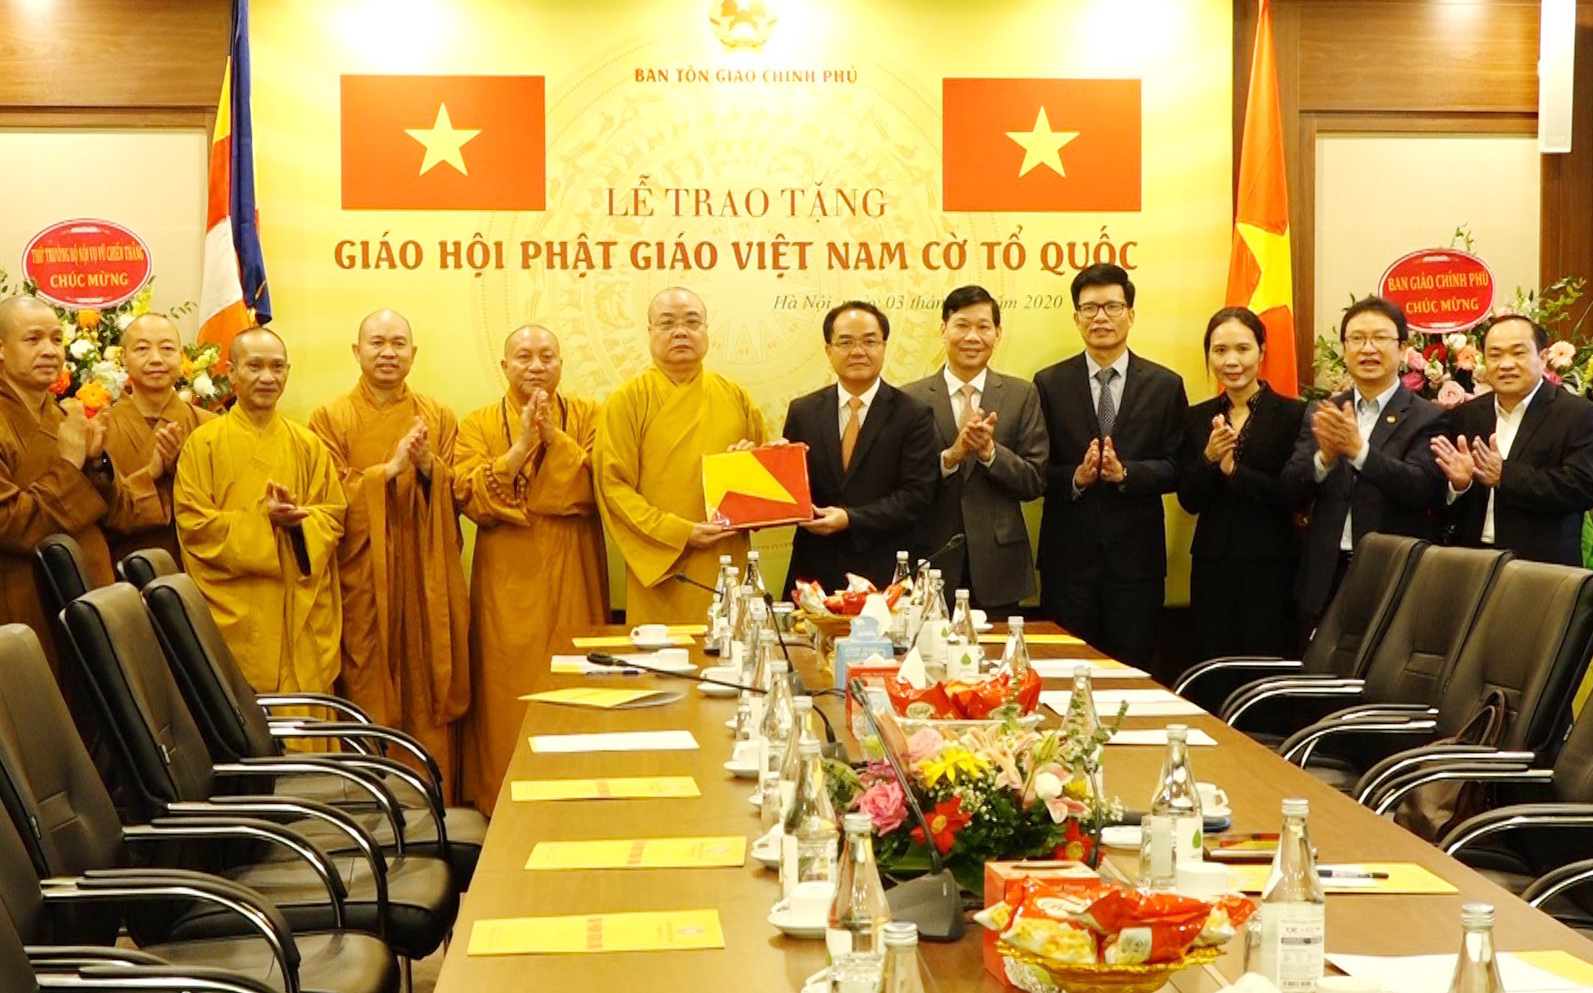  Ban Tôn giáo Chính phủ chúc mừng kỷ niệm 39 năm thành lập GHPGVN